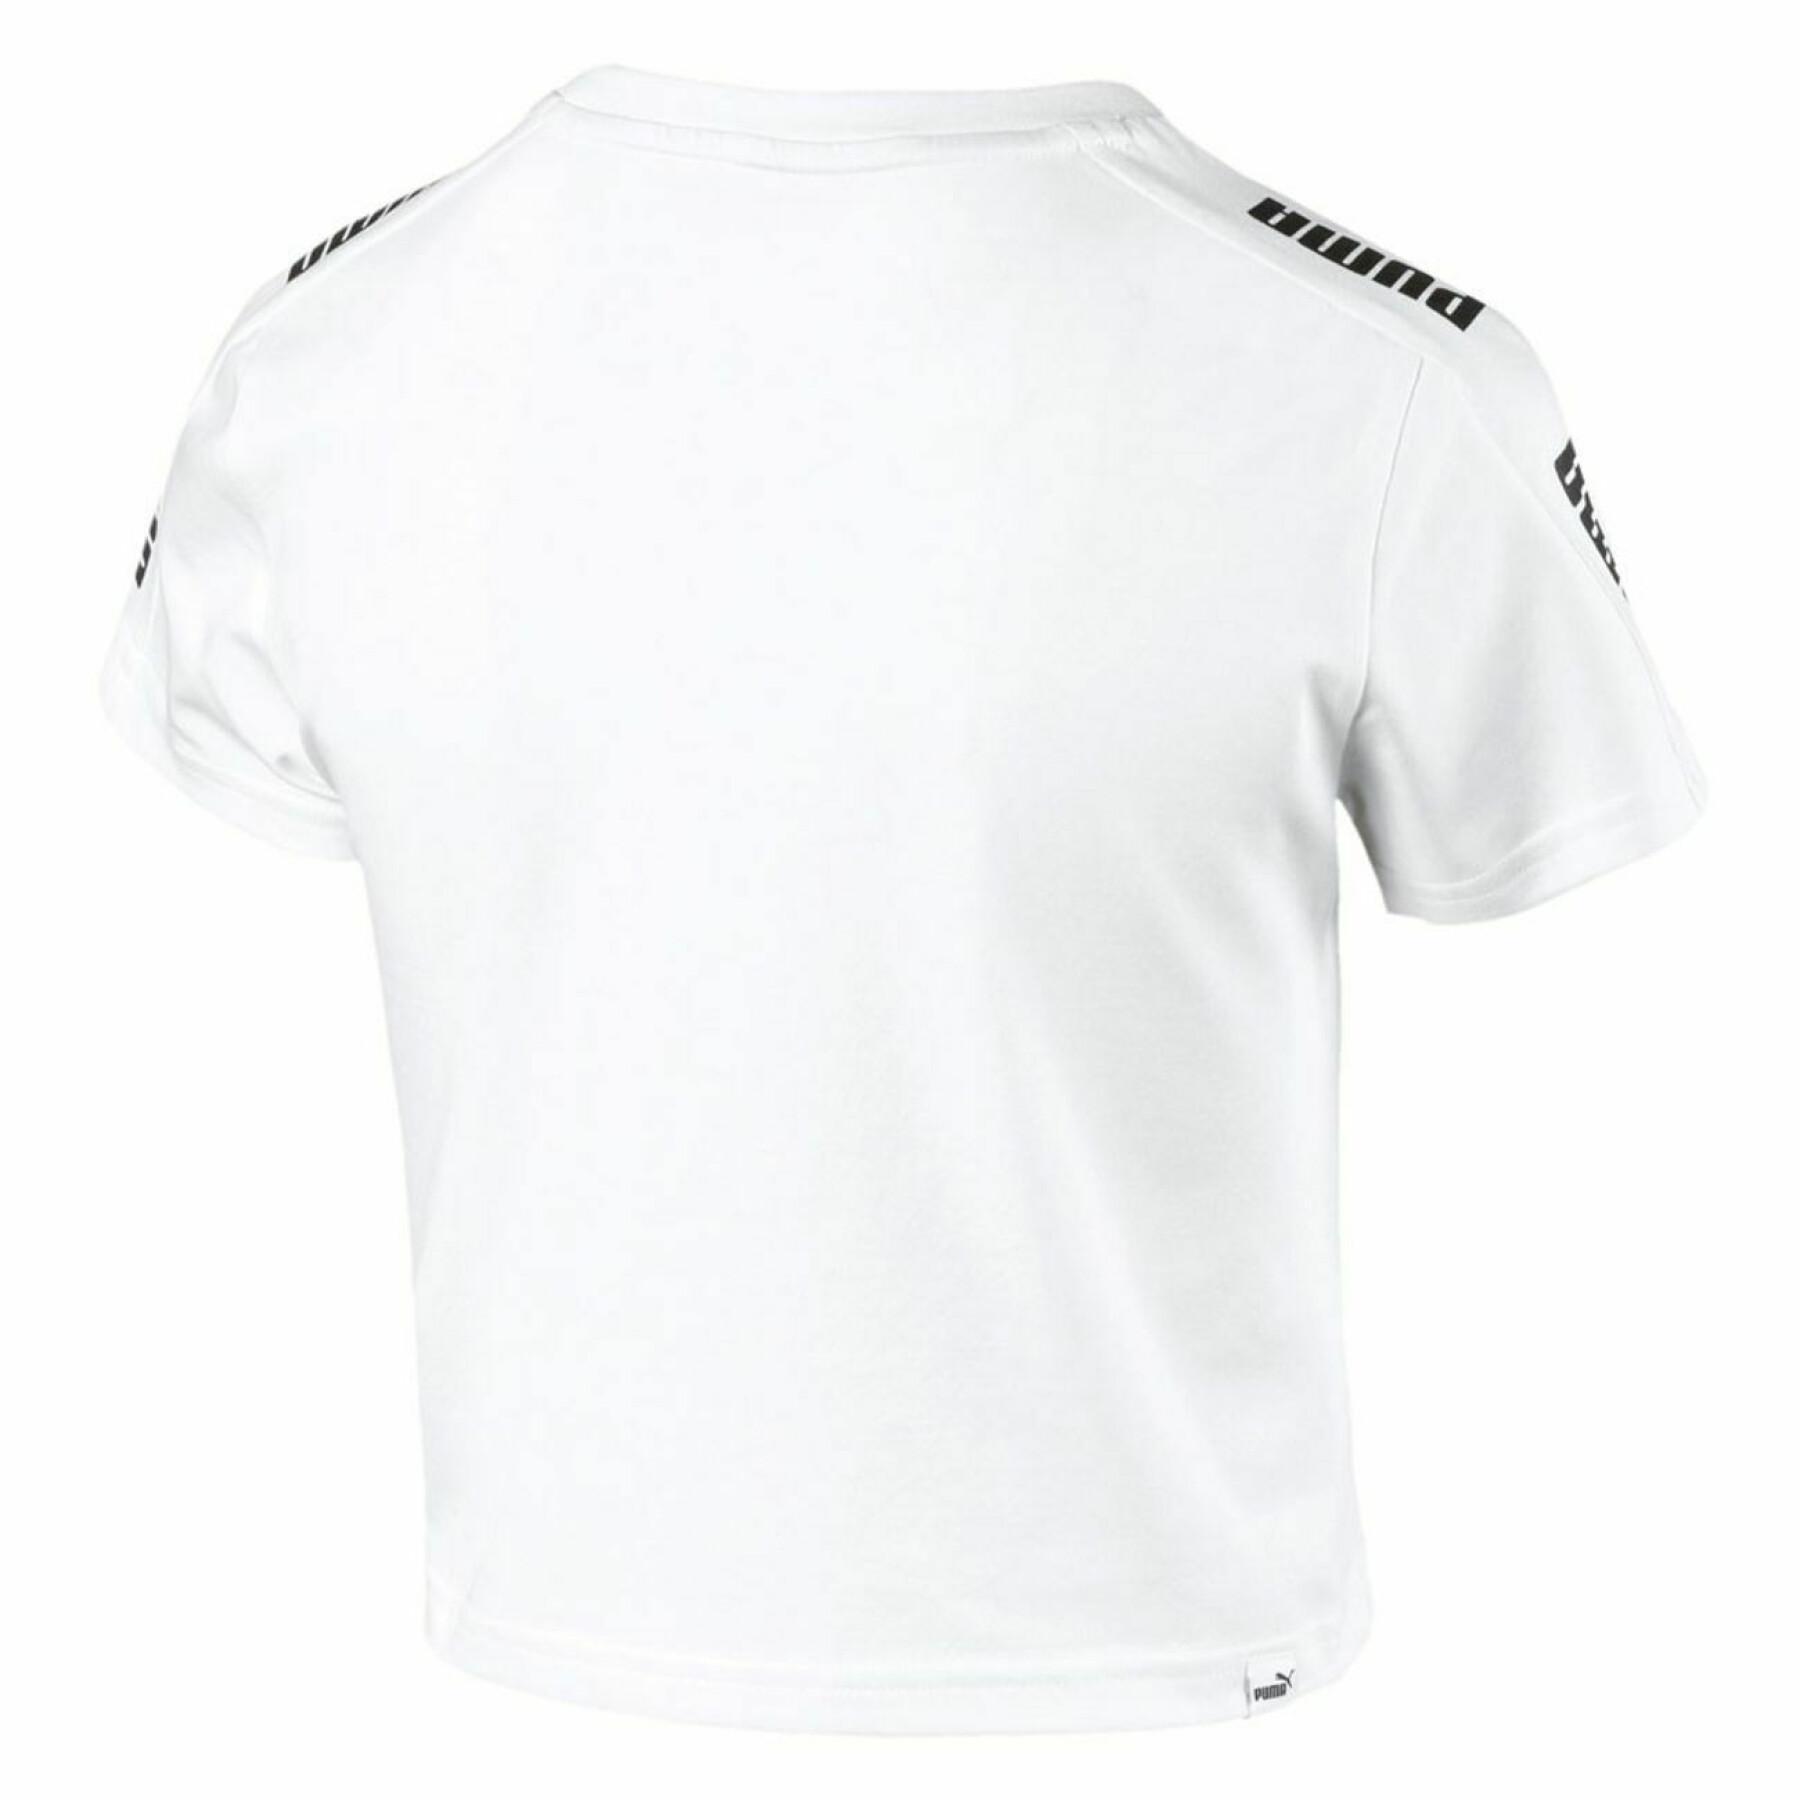 T-shirt för kvinnor Puma Amplified logo fitted